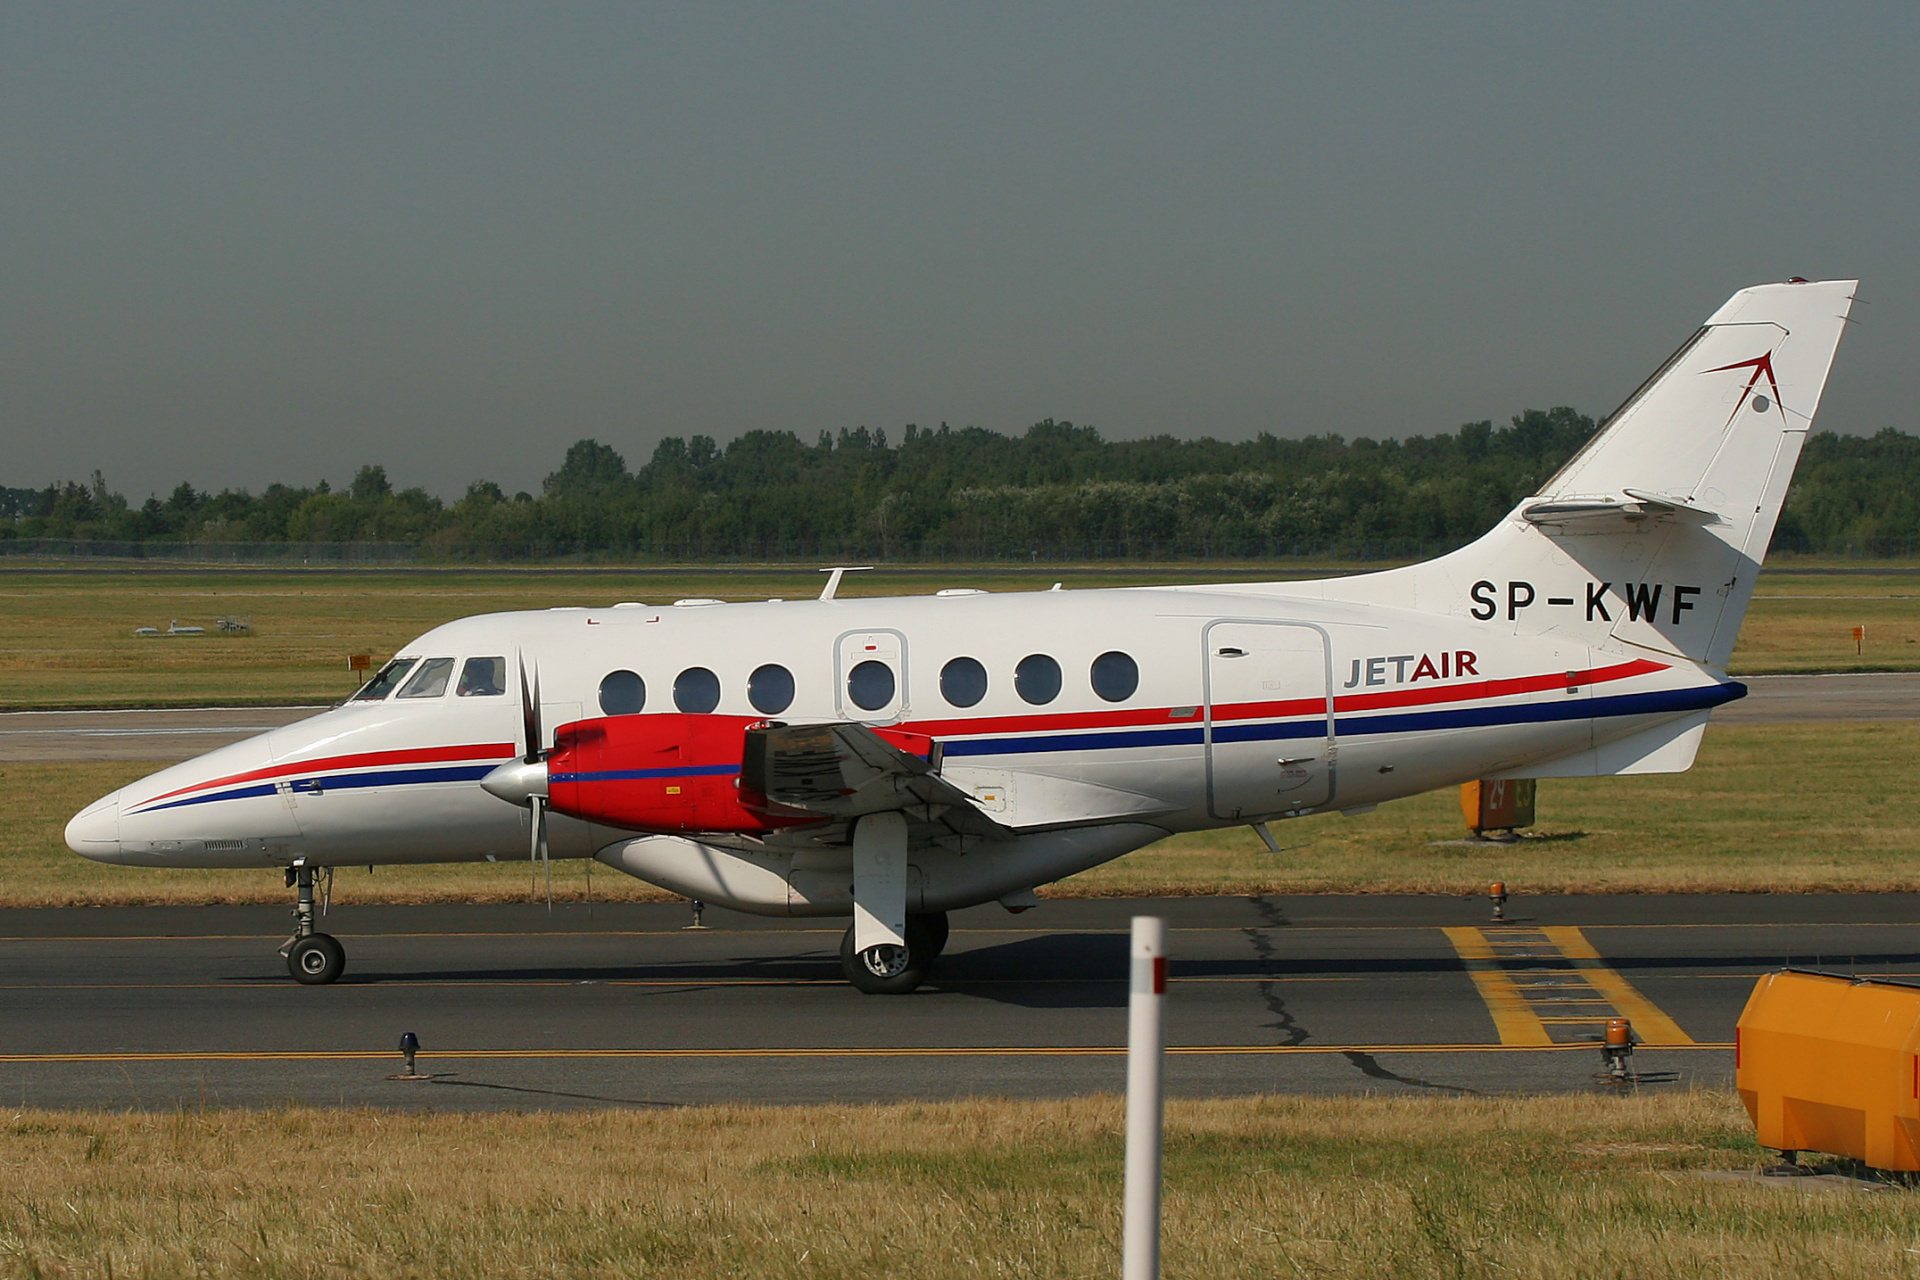 SP-KWF, Jet Air (Samoloty » Spotting na EPWA » BAe Jetstream 32)